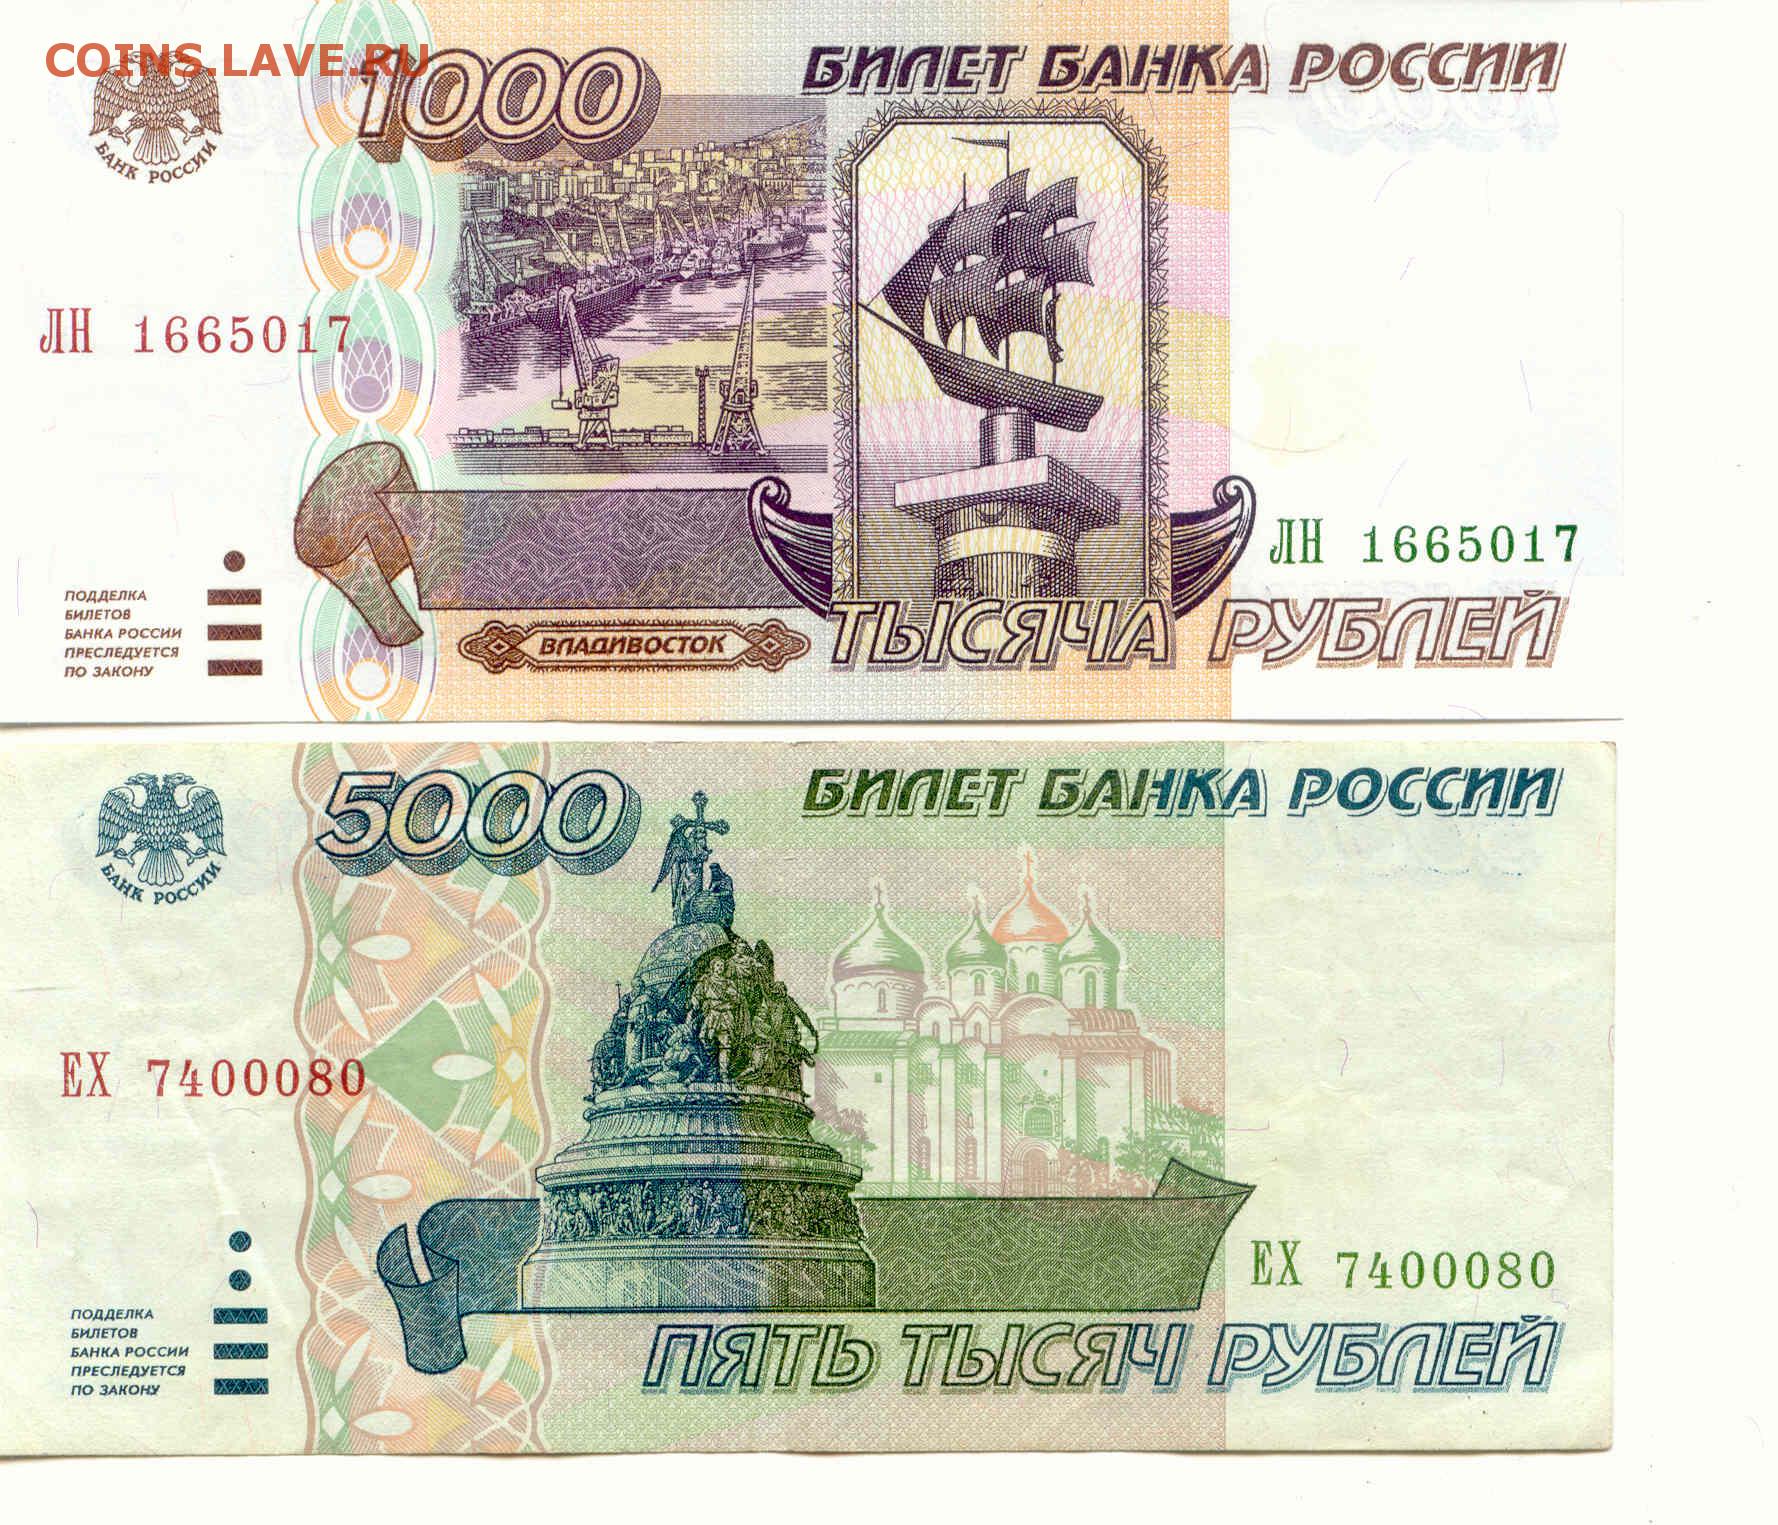 5000 рублей 1995. 1000 Рублей 1995 года. 5000 Рублей 1995 года. Купюра 1000 рублей.